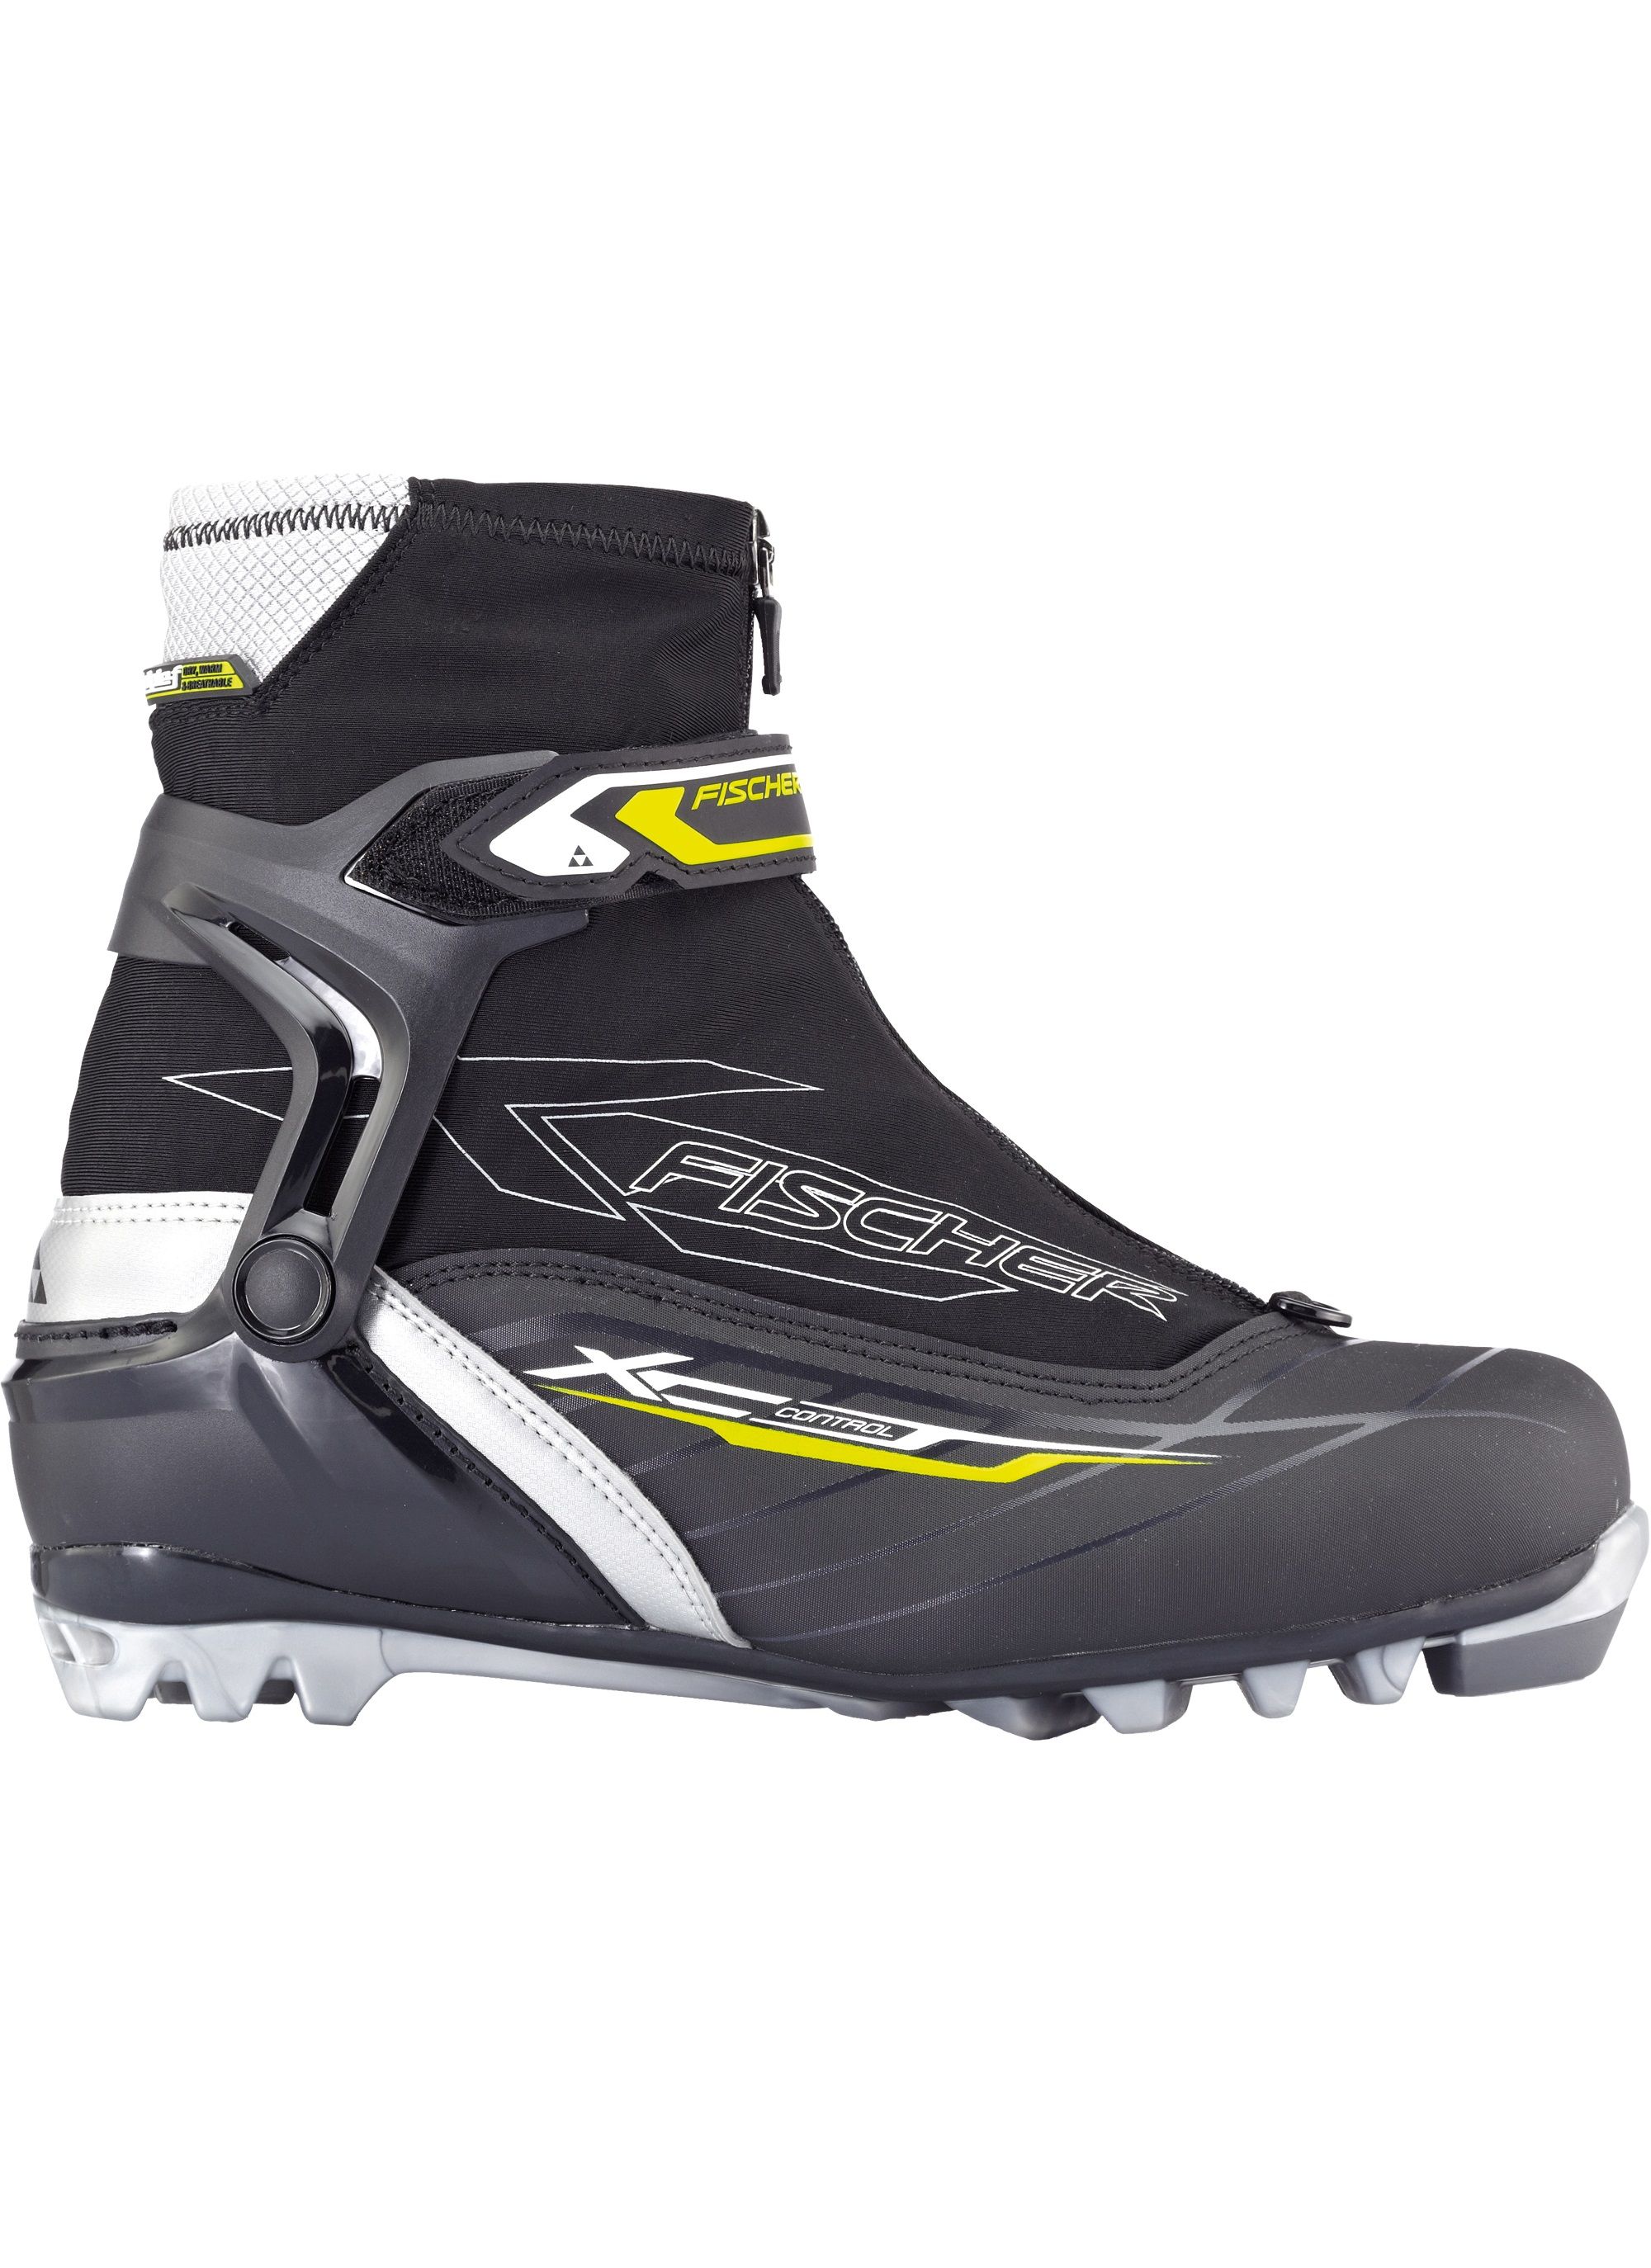 Ботинки лыжные FISCHER XC Control 